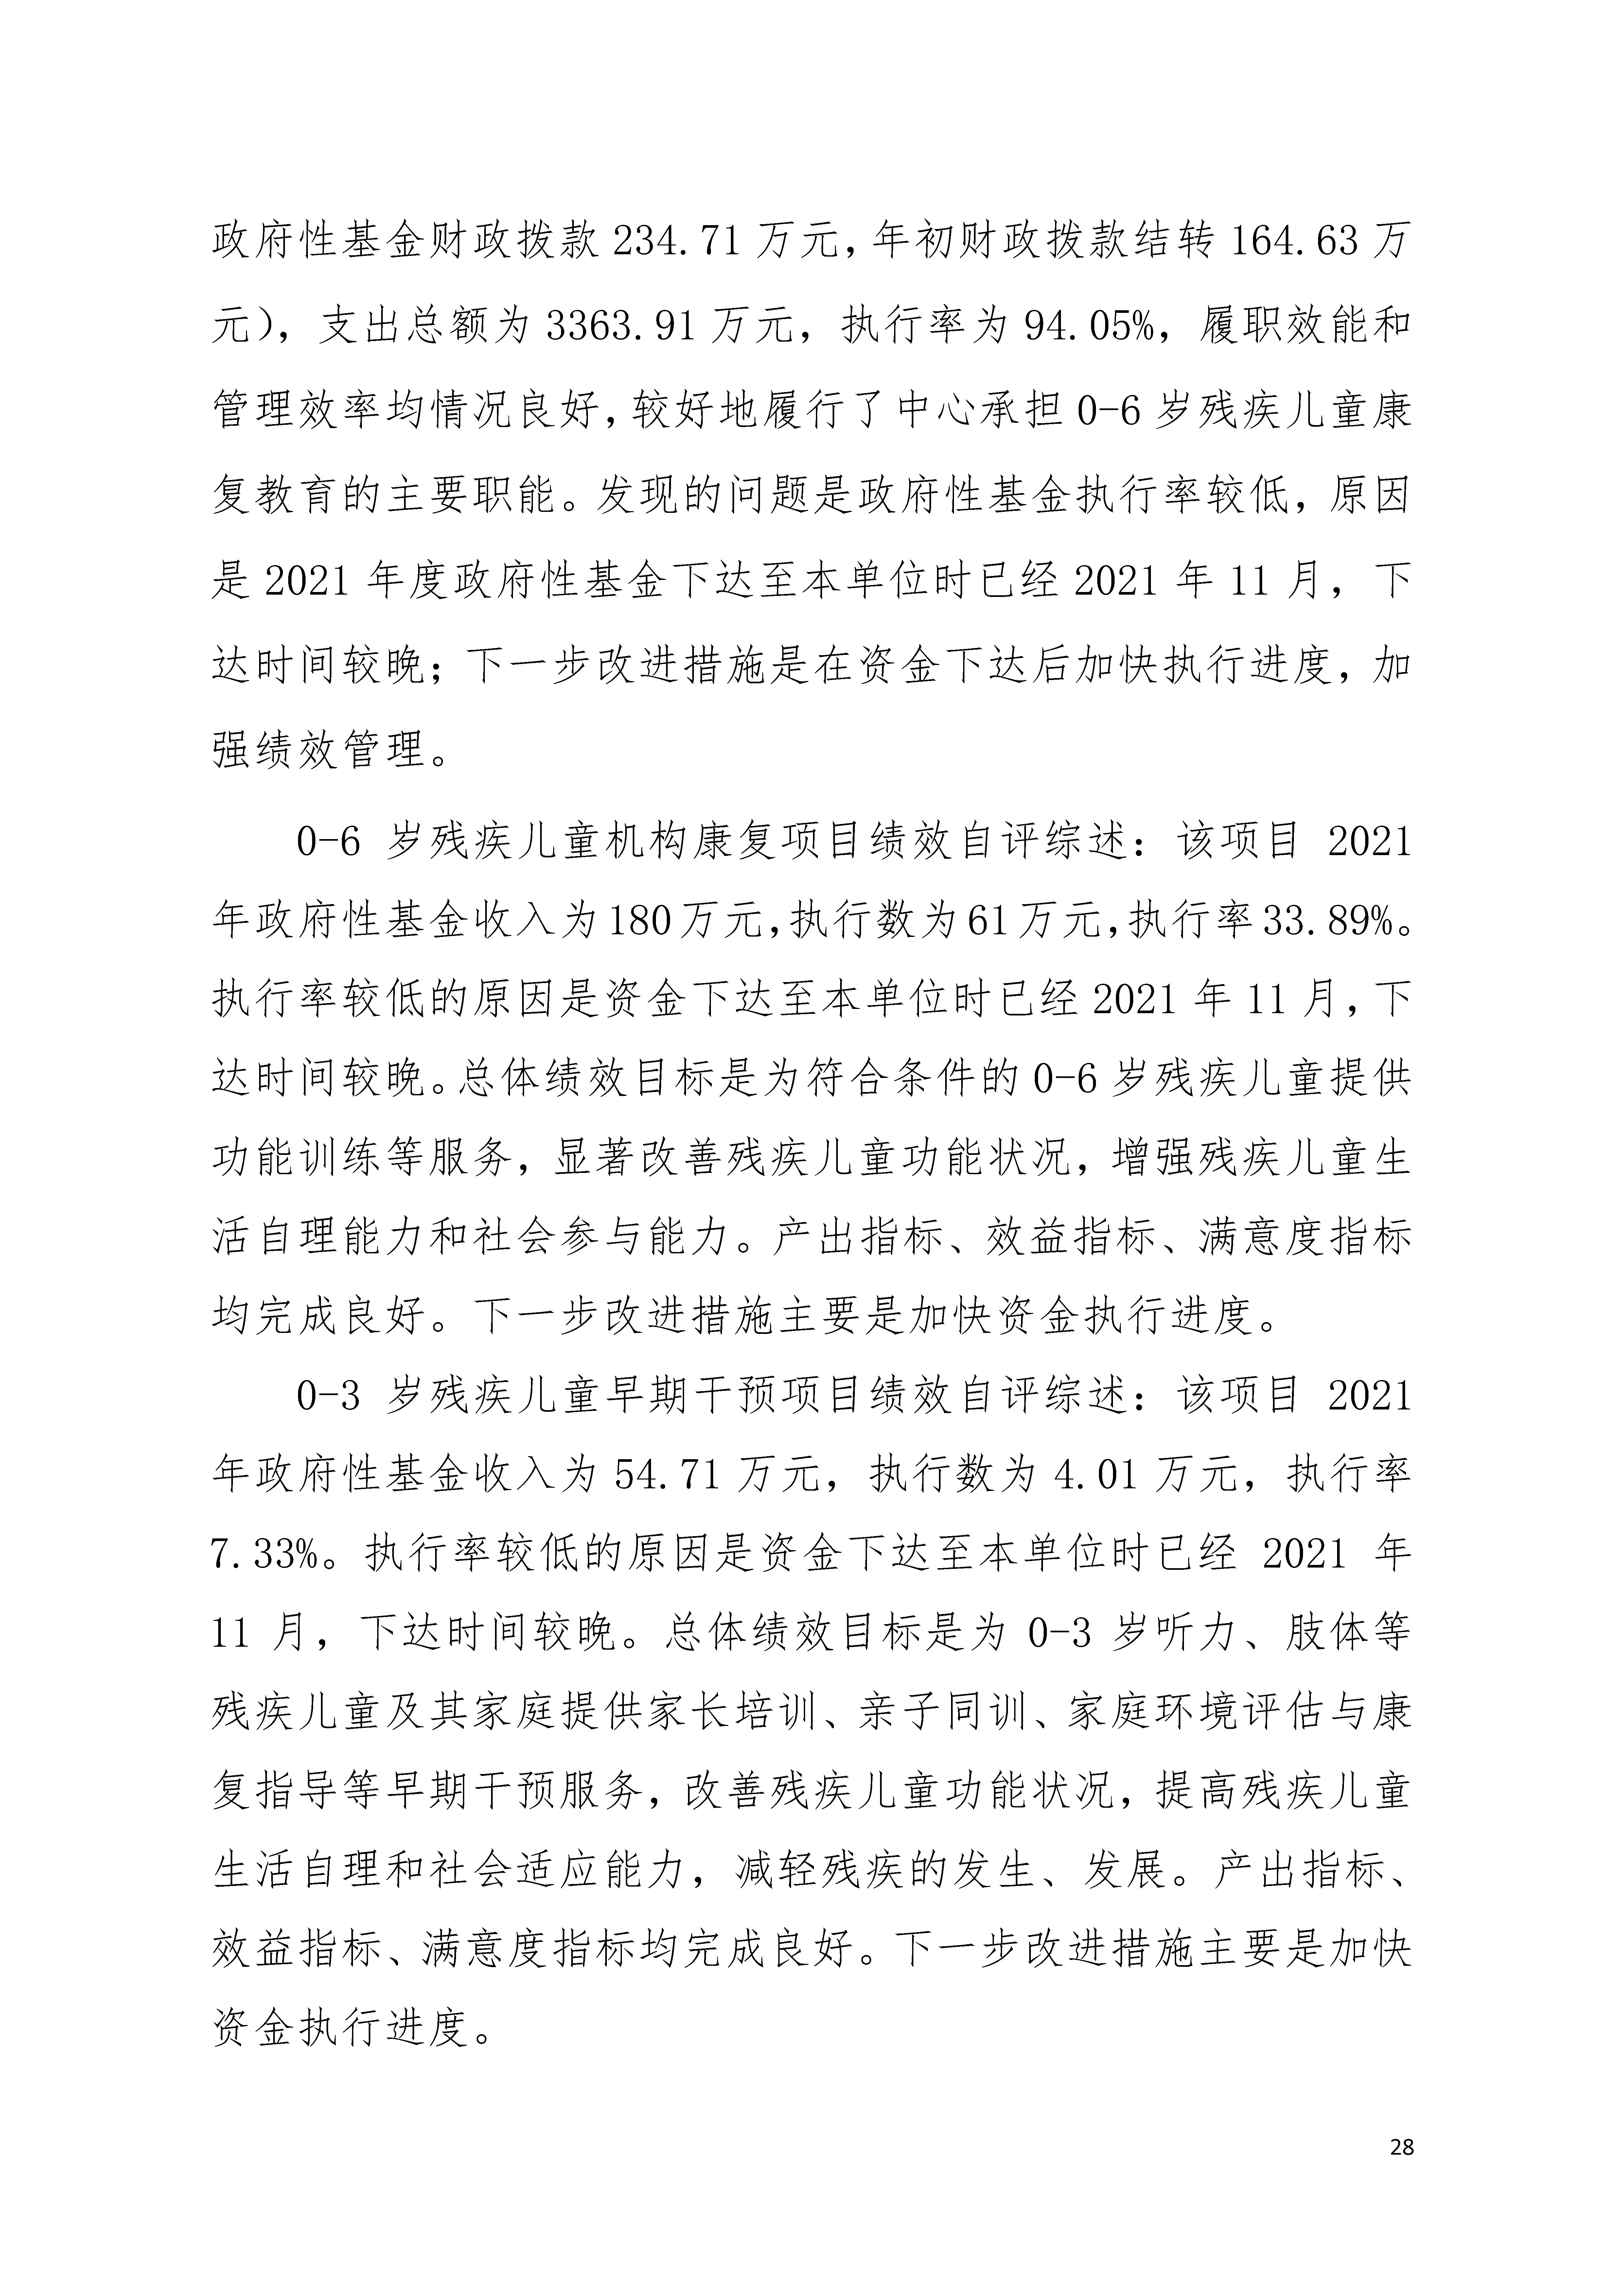 2021年广东省残疾人康复中心部门决算 0629_页面_28.jpg